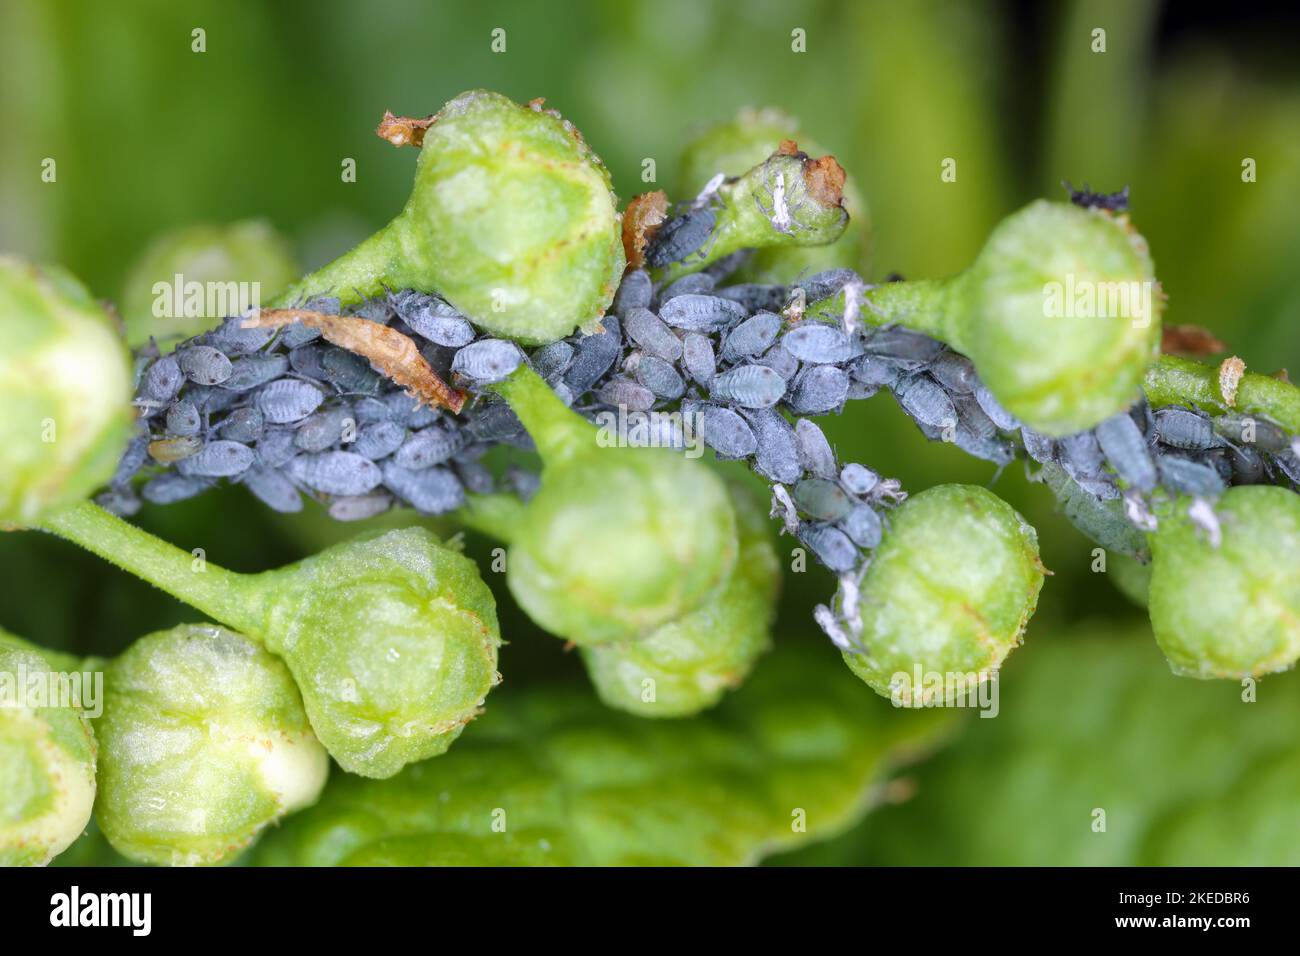 Junge Blattläuse der Vogelkirsche-Hafer-Blattlaus (Rhopalosiphum padi) nach dem Winterschlaf auf Knospen Vogelkirsche. Stockfoto